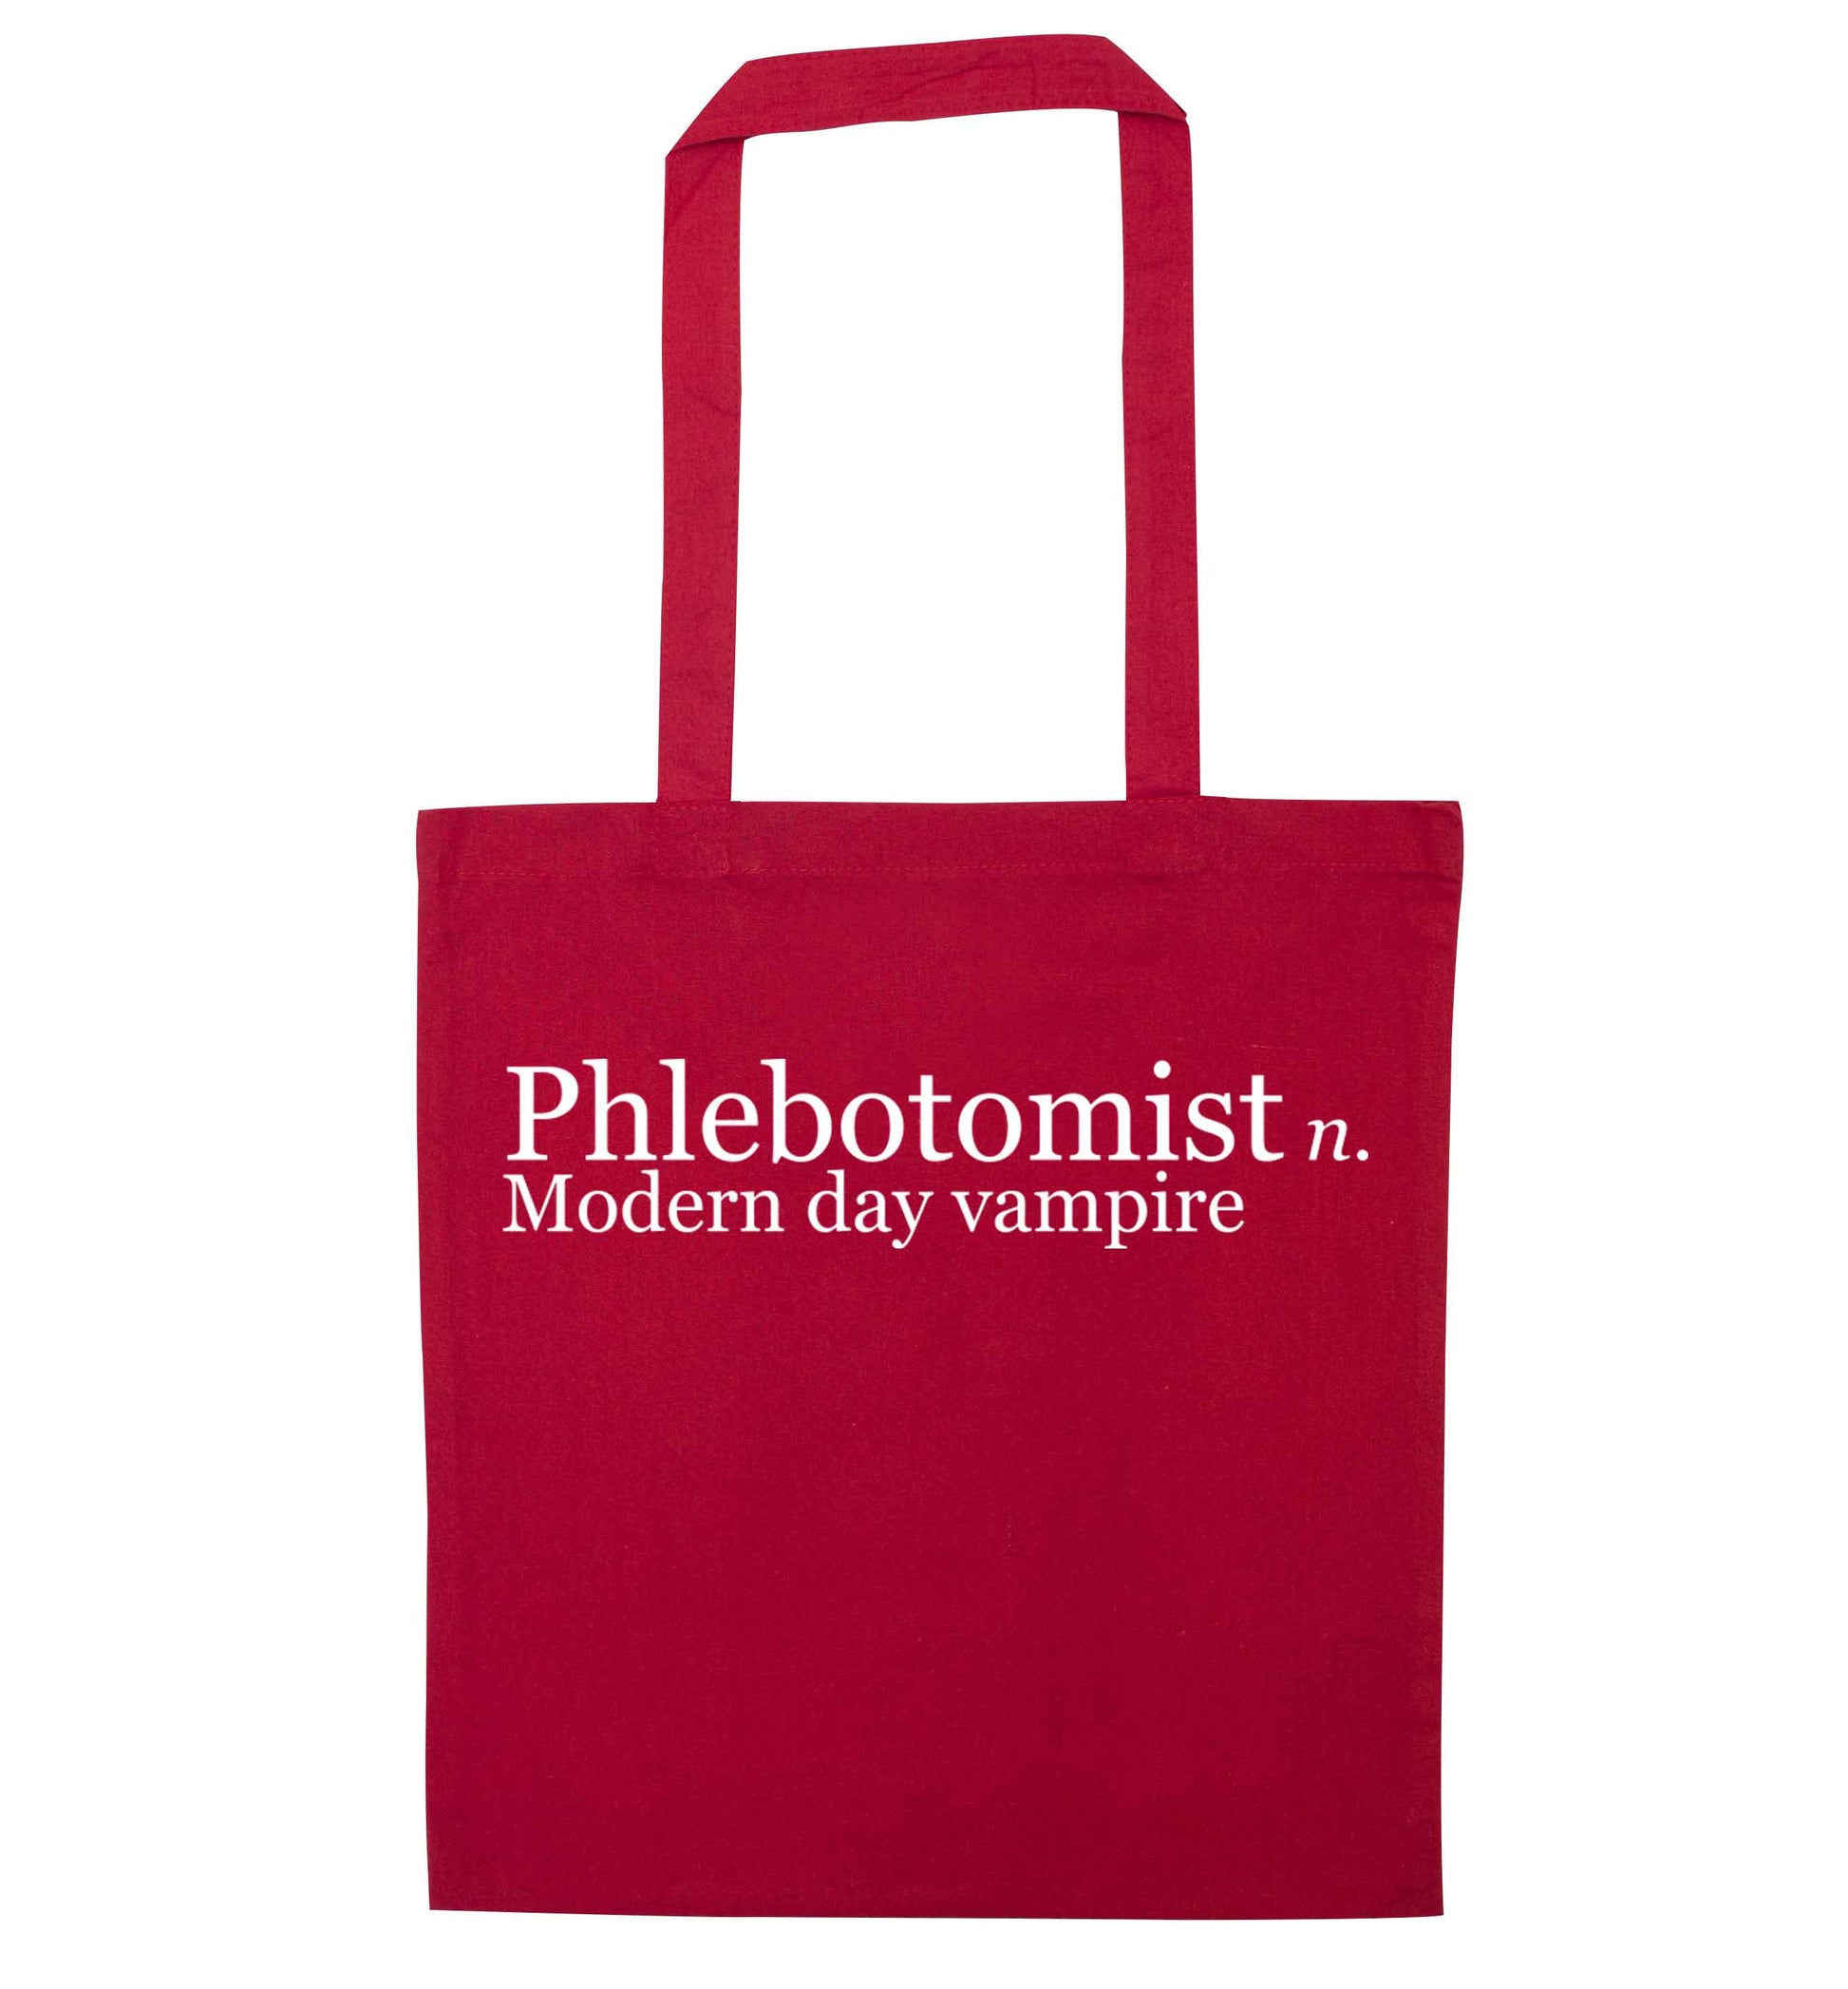 Phlebotomist - Modern day vampire red tote bag